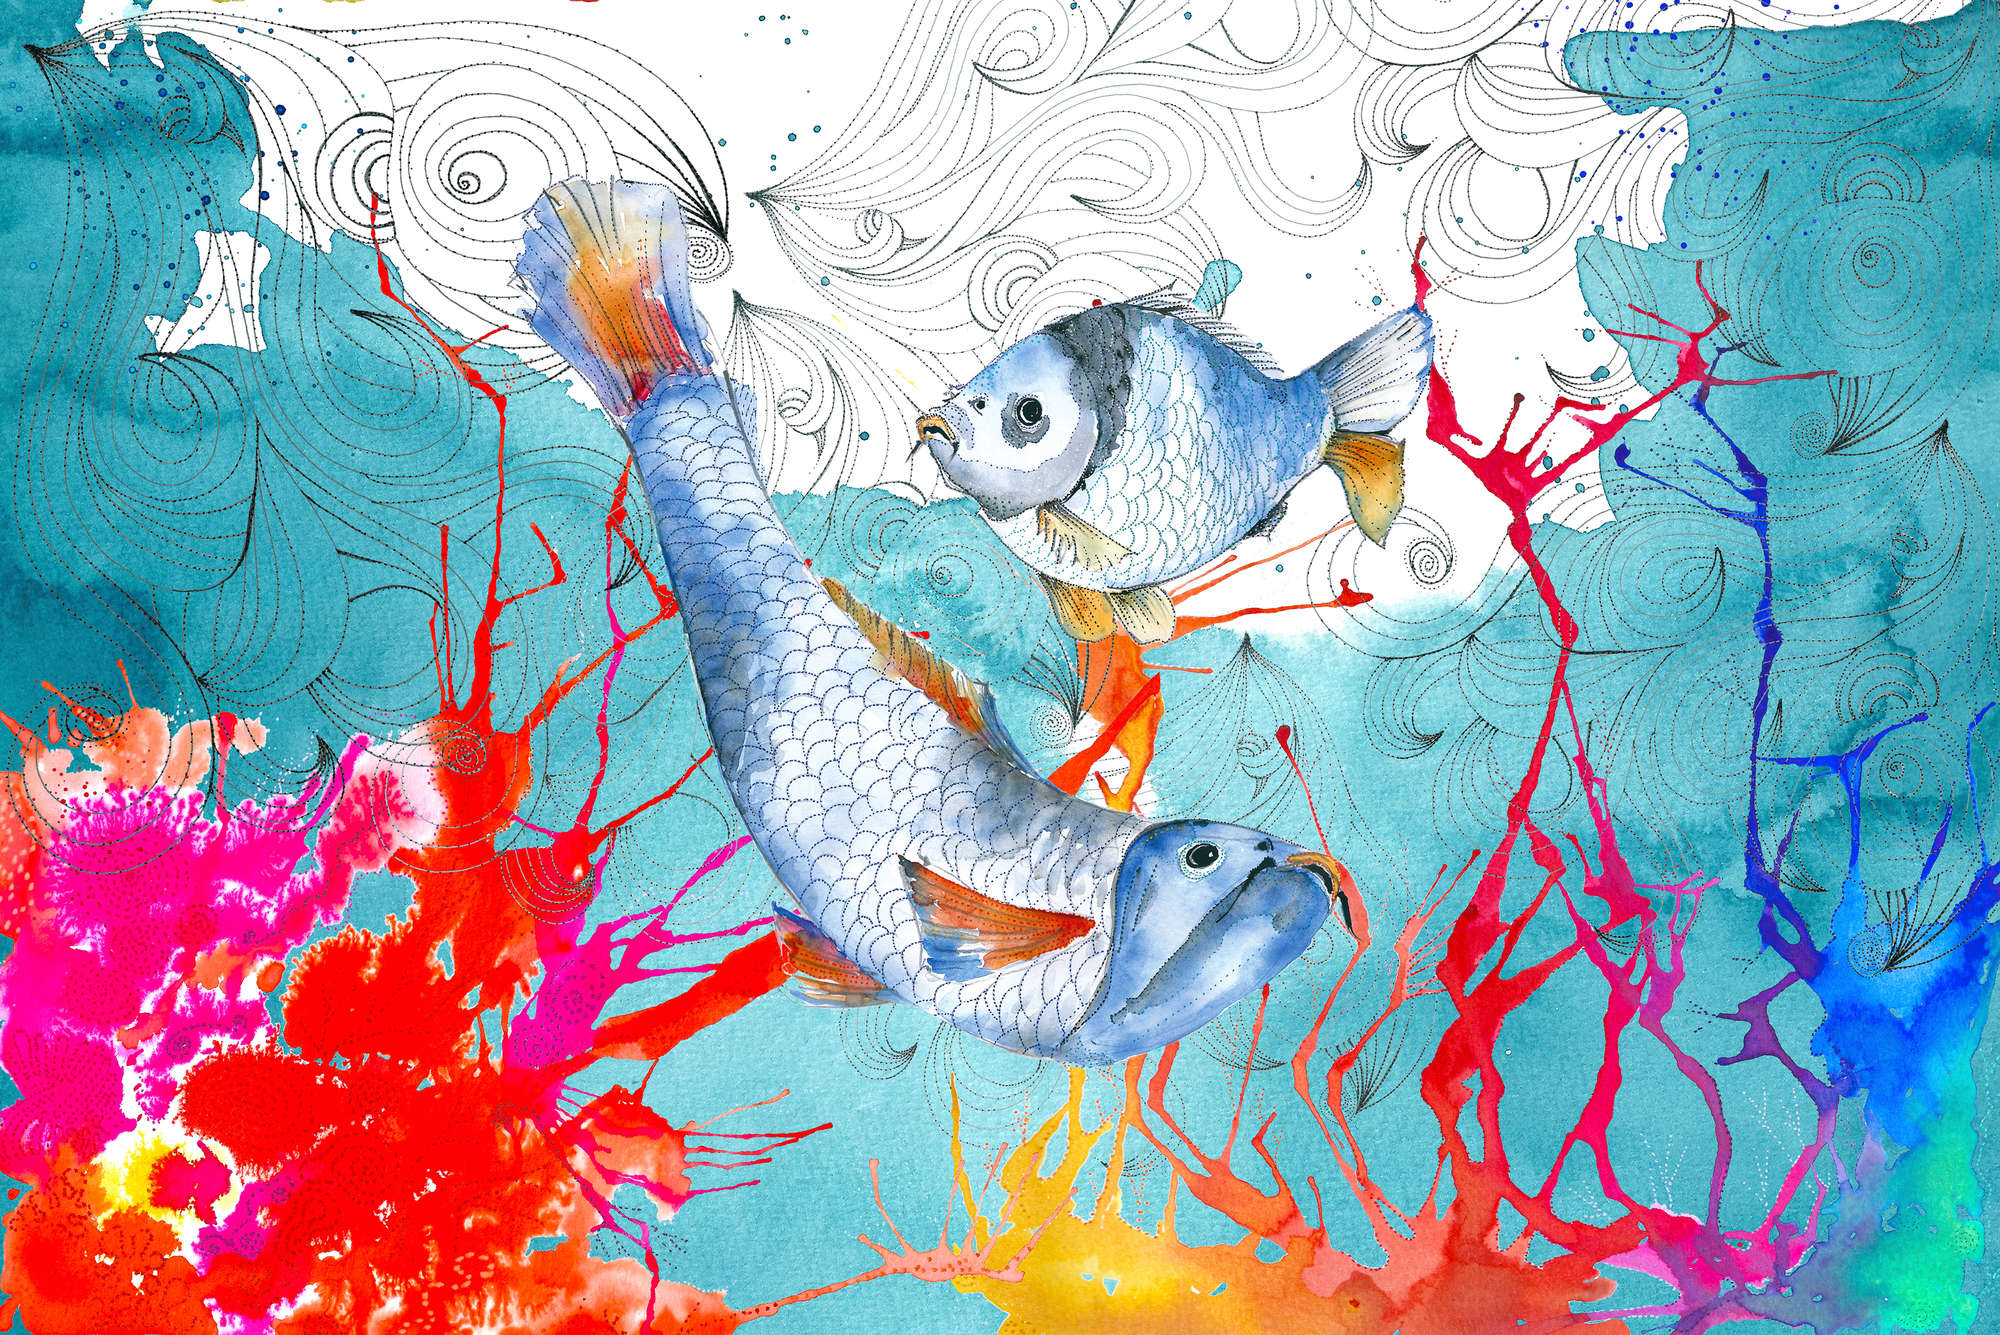             Papel pintado de acuarela con motivo de pez en azul y rosa sobre no tejido liso mate
        